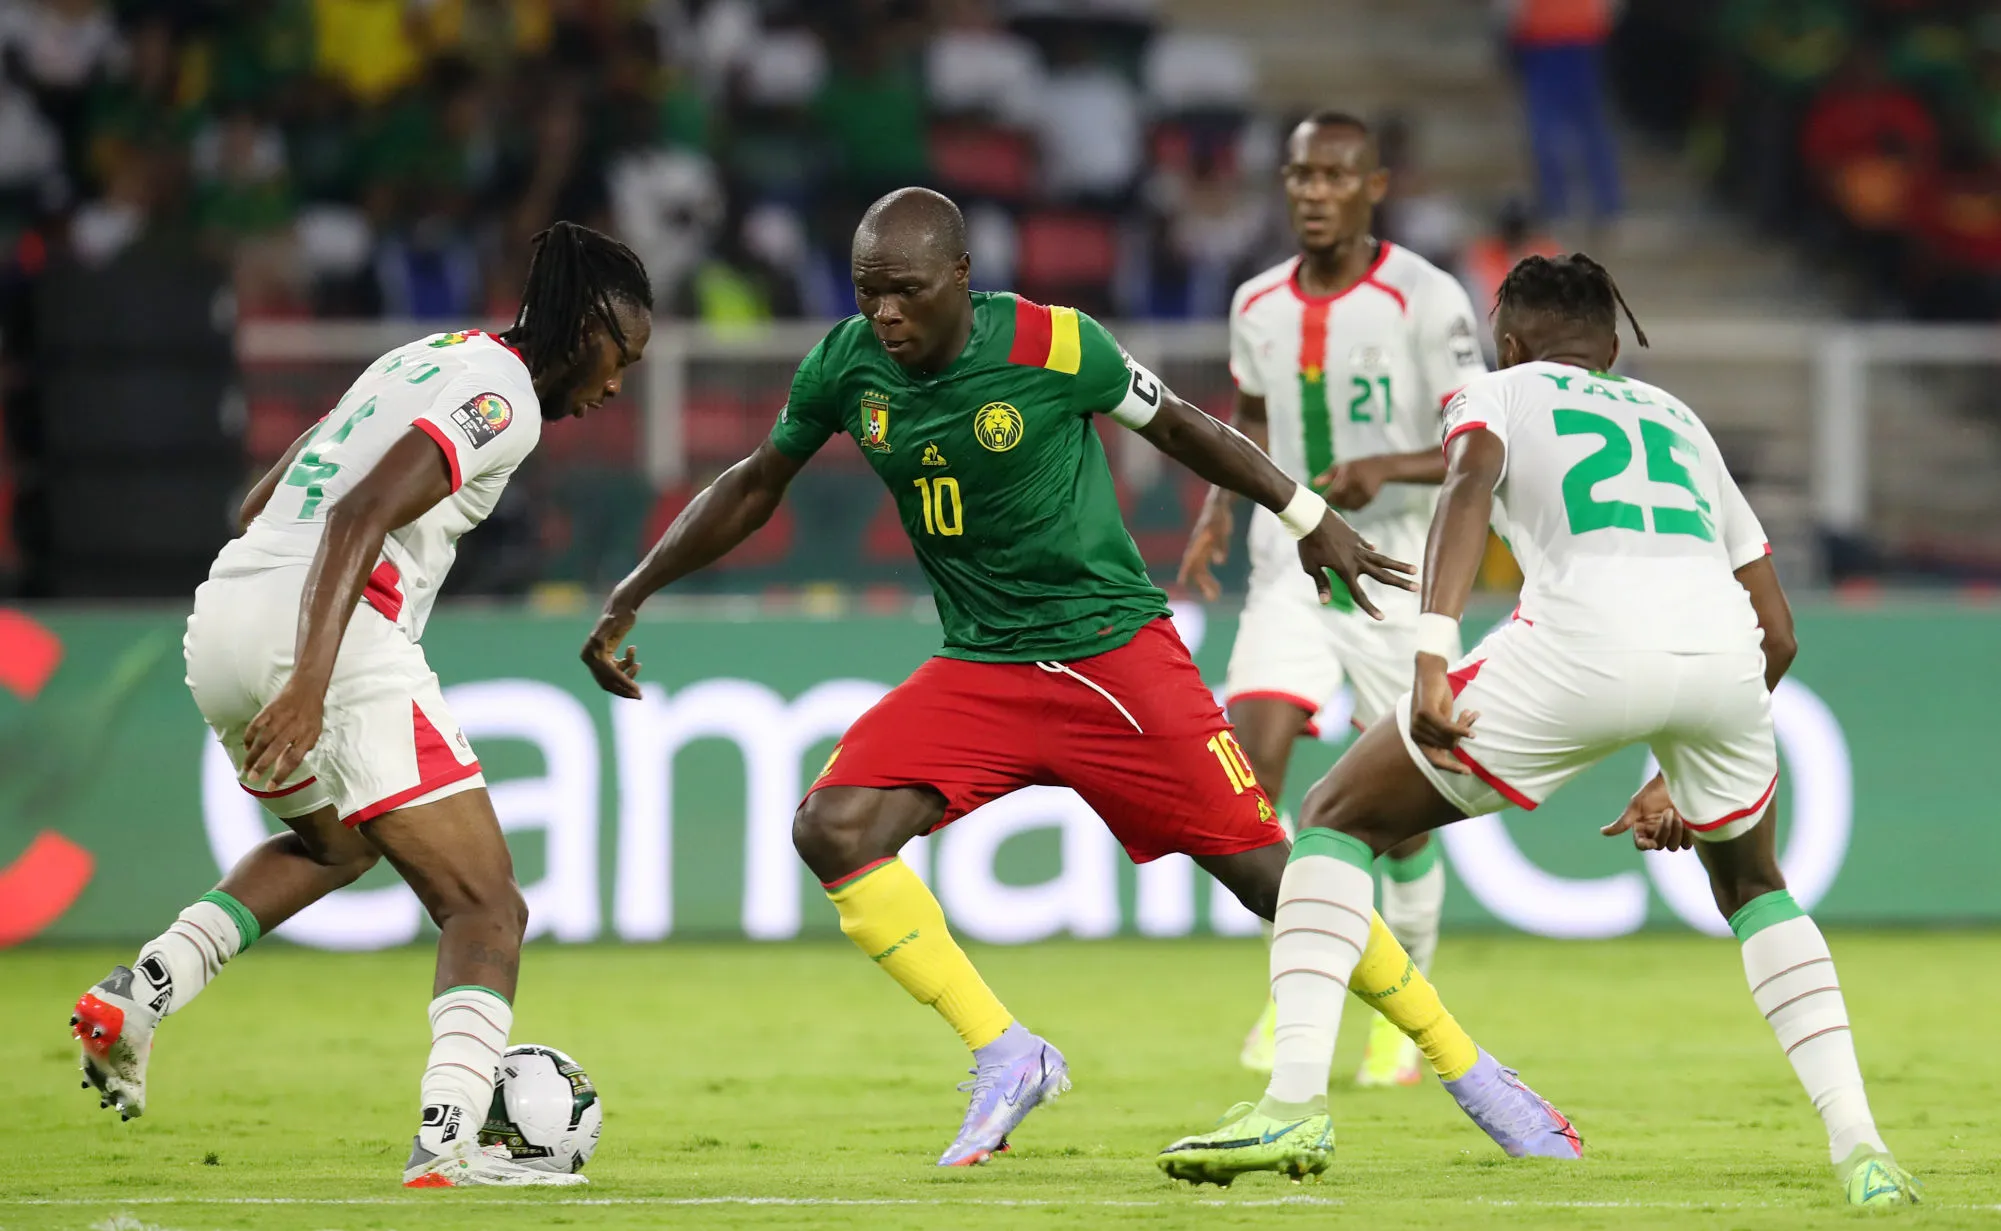 Pronostic Burkina Faso Cameroun : Analyse, cotes et prono du match pour la 3e place de la CAN 2022